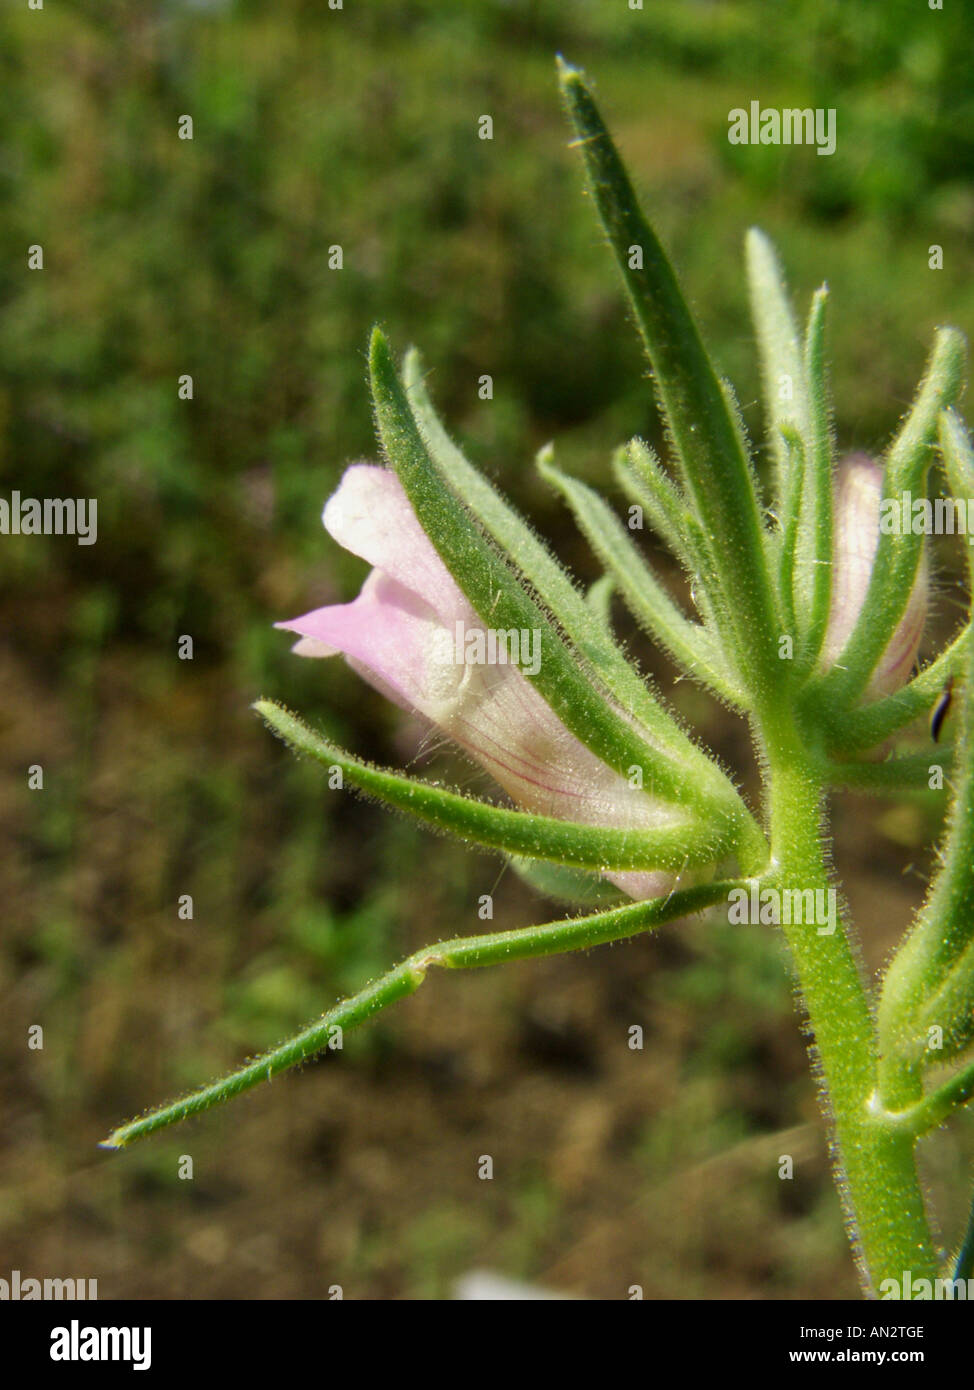 lesser snapdragon (Misopates orontium), flower Stock Photo